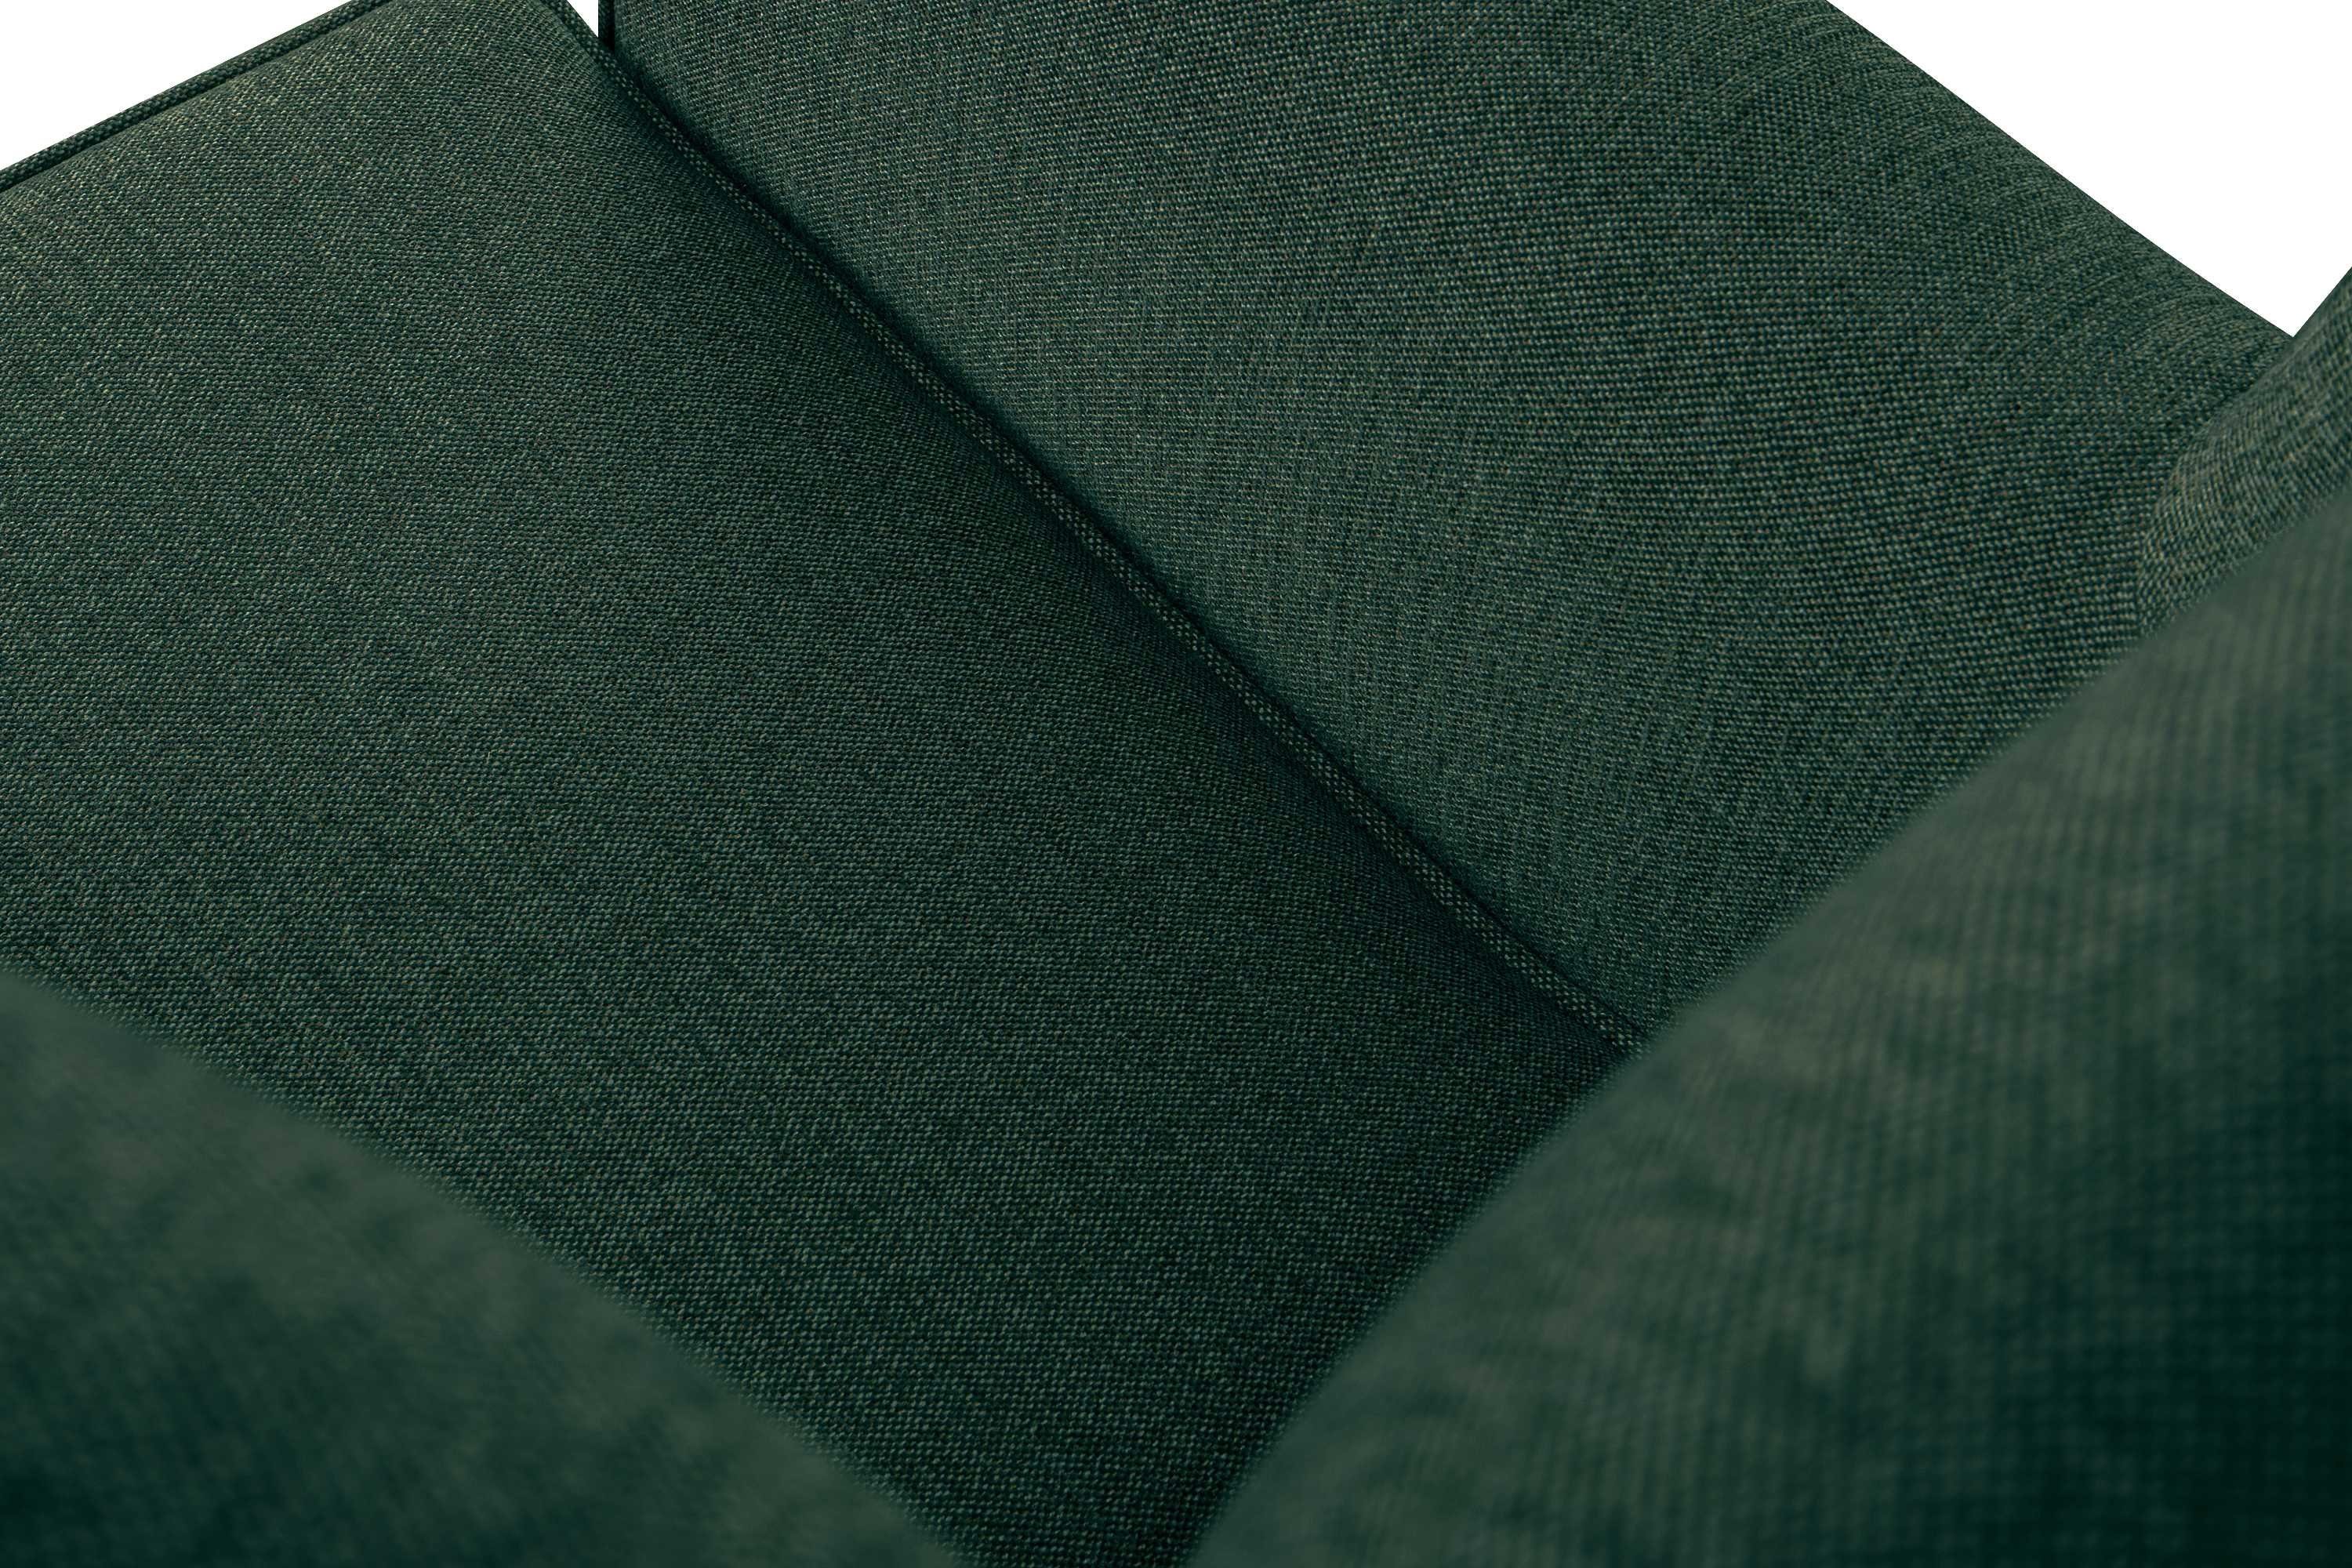 Federn Armlehnen, mit Gepolsterter Ohrensessel mit Sitzfläche, MILES in der Sessel, Sessel Konsimo Massivholzbeine